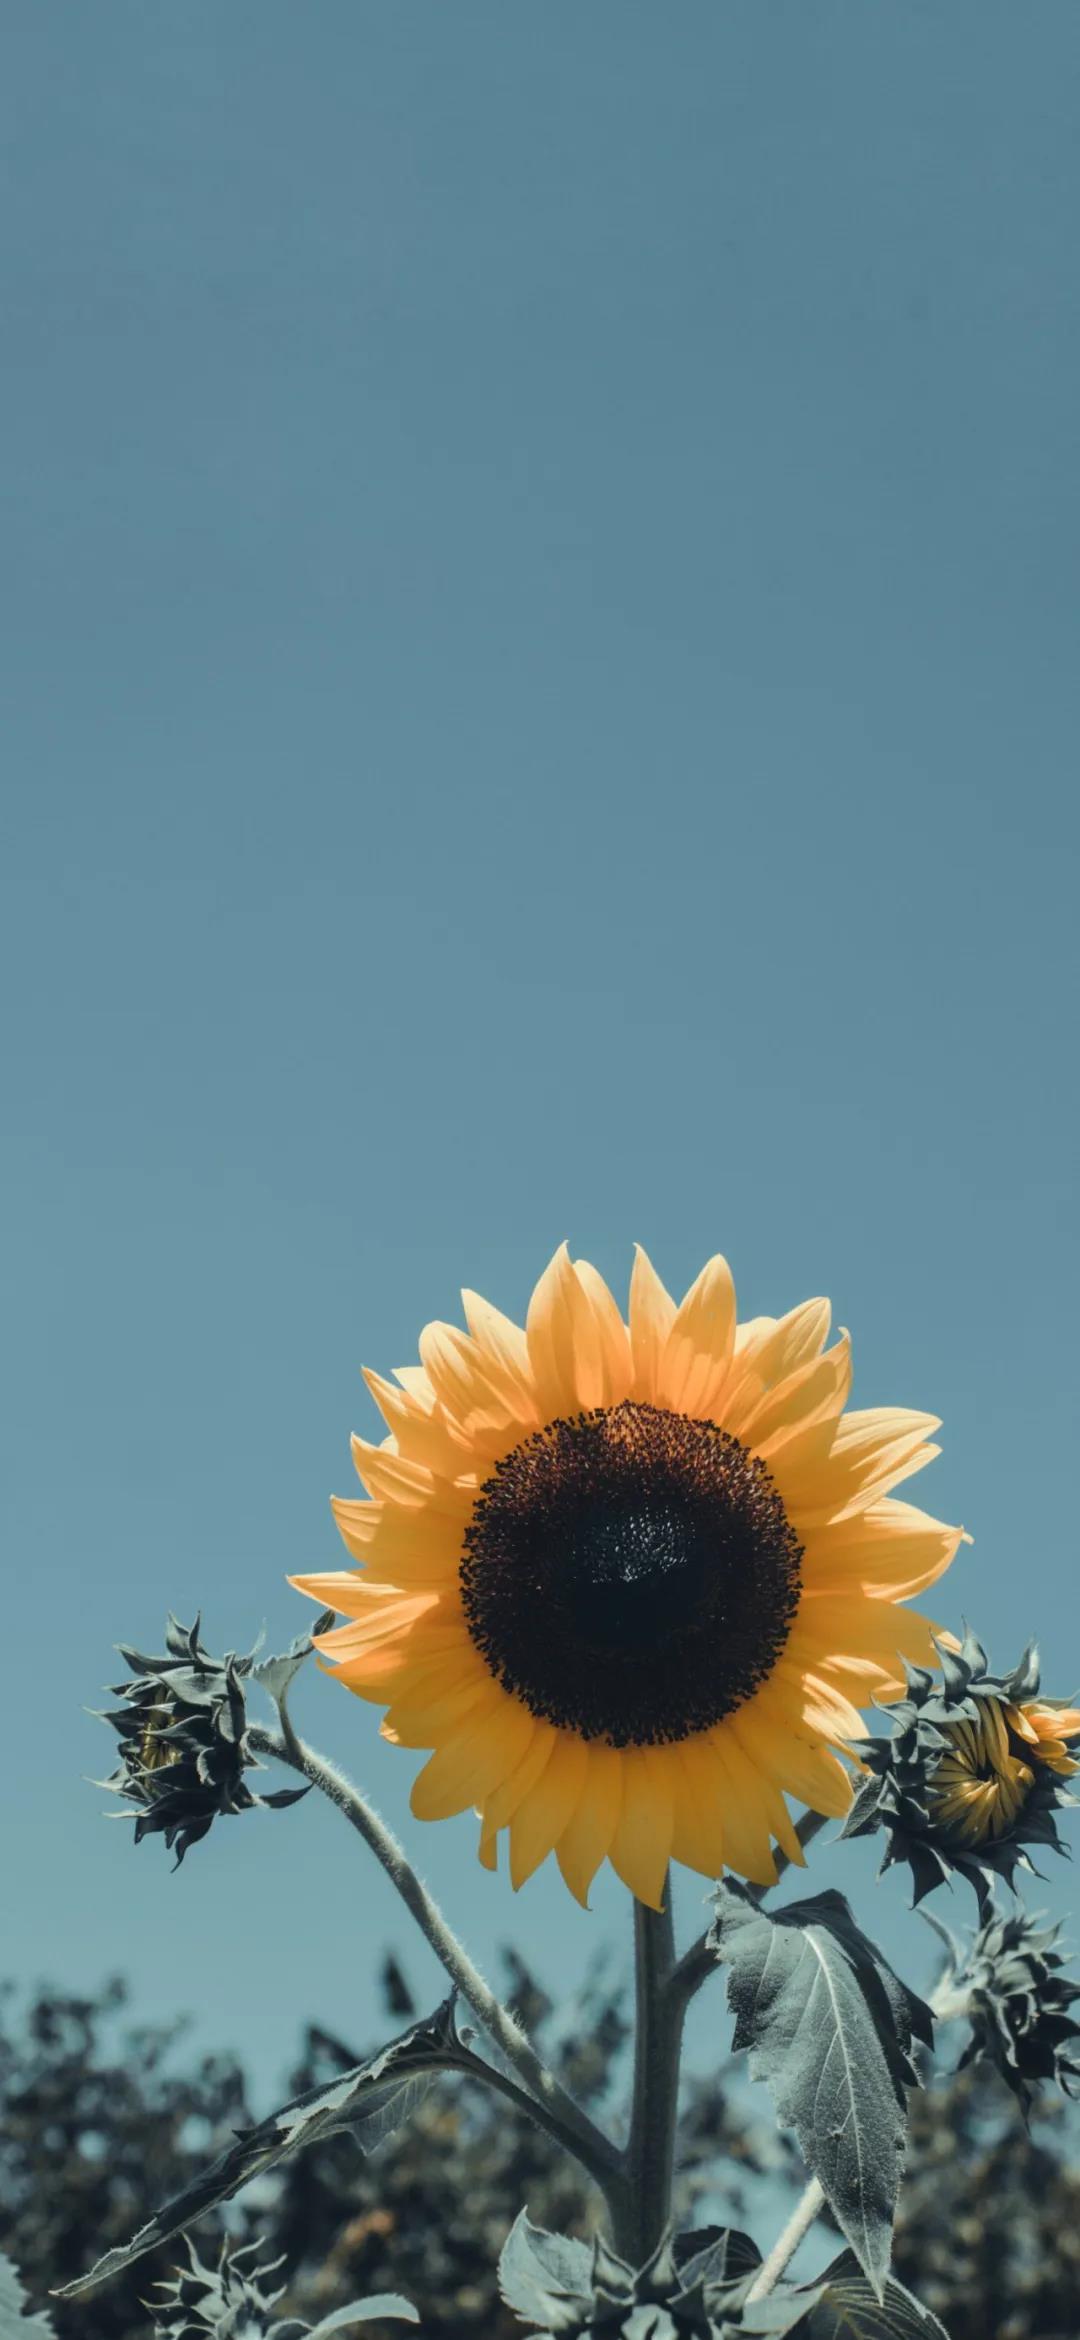 热情活力的黄色向日葵唯美花朵手机壁纸图片